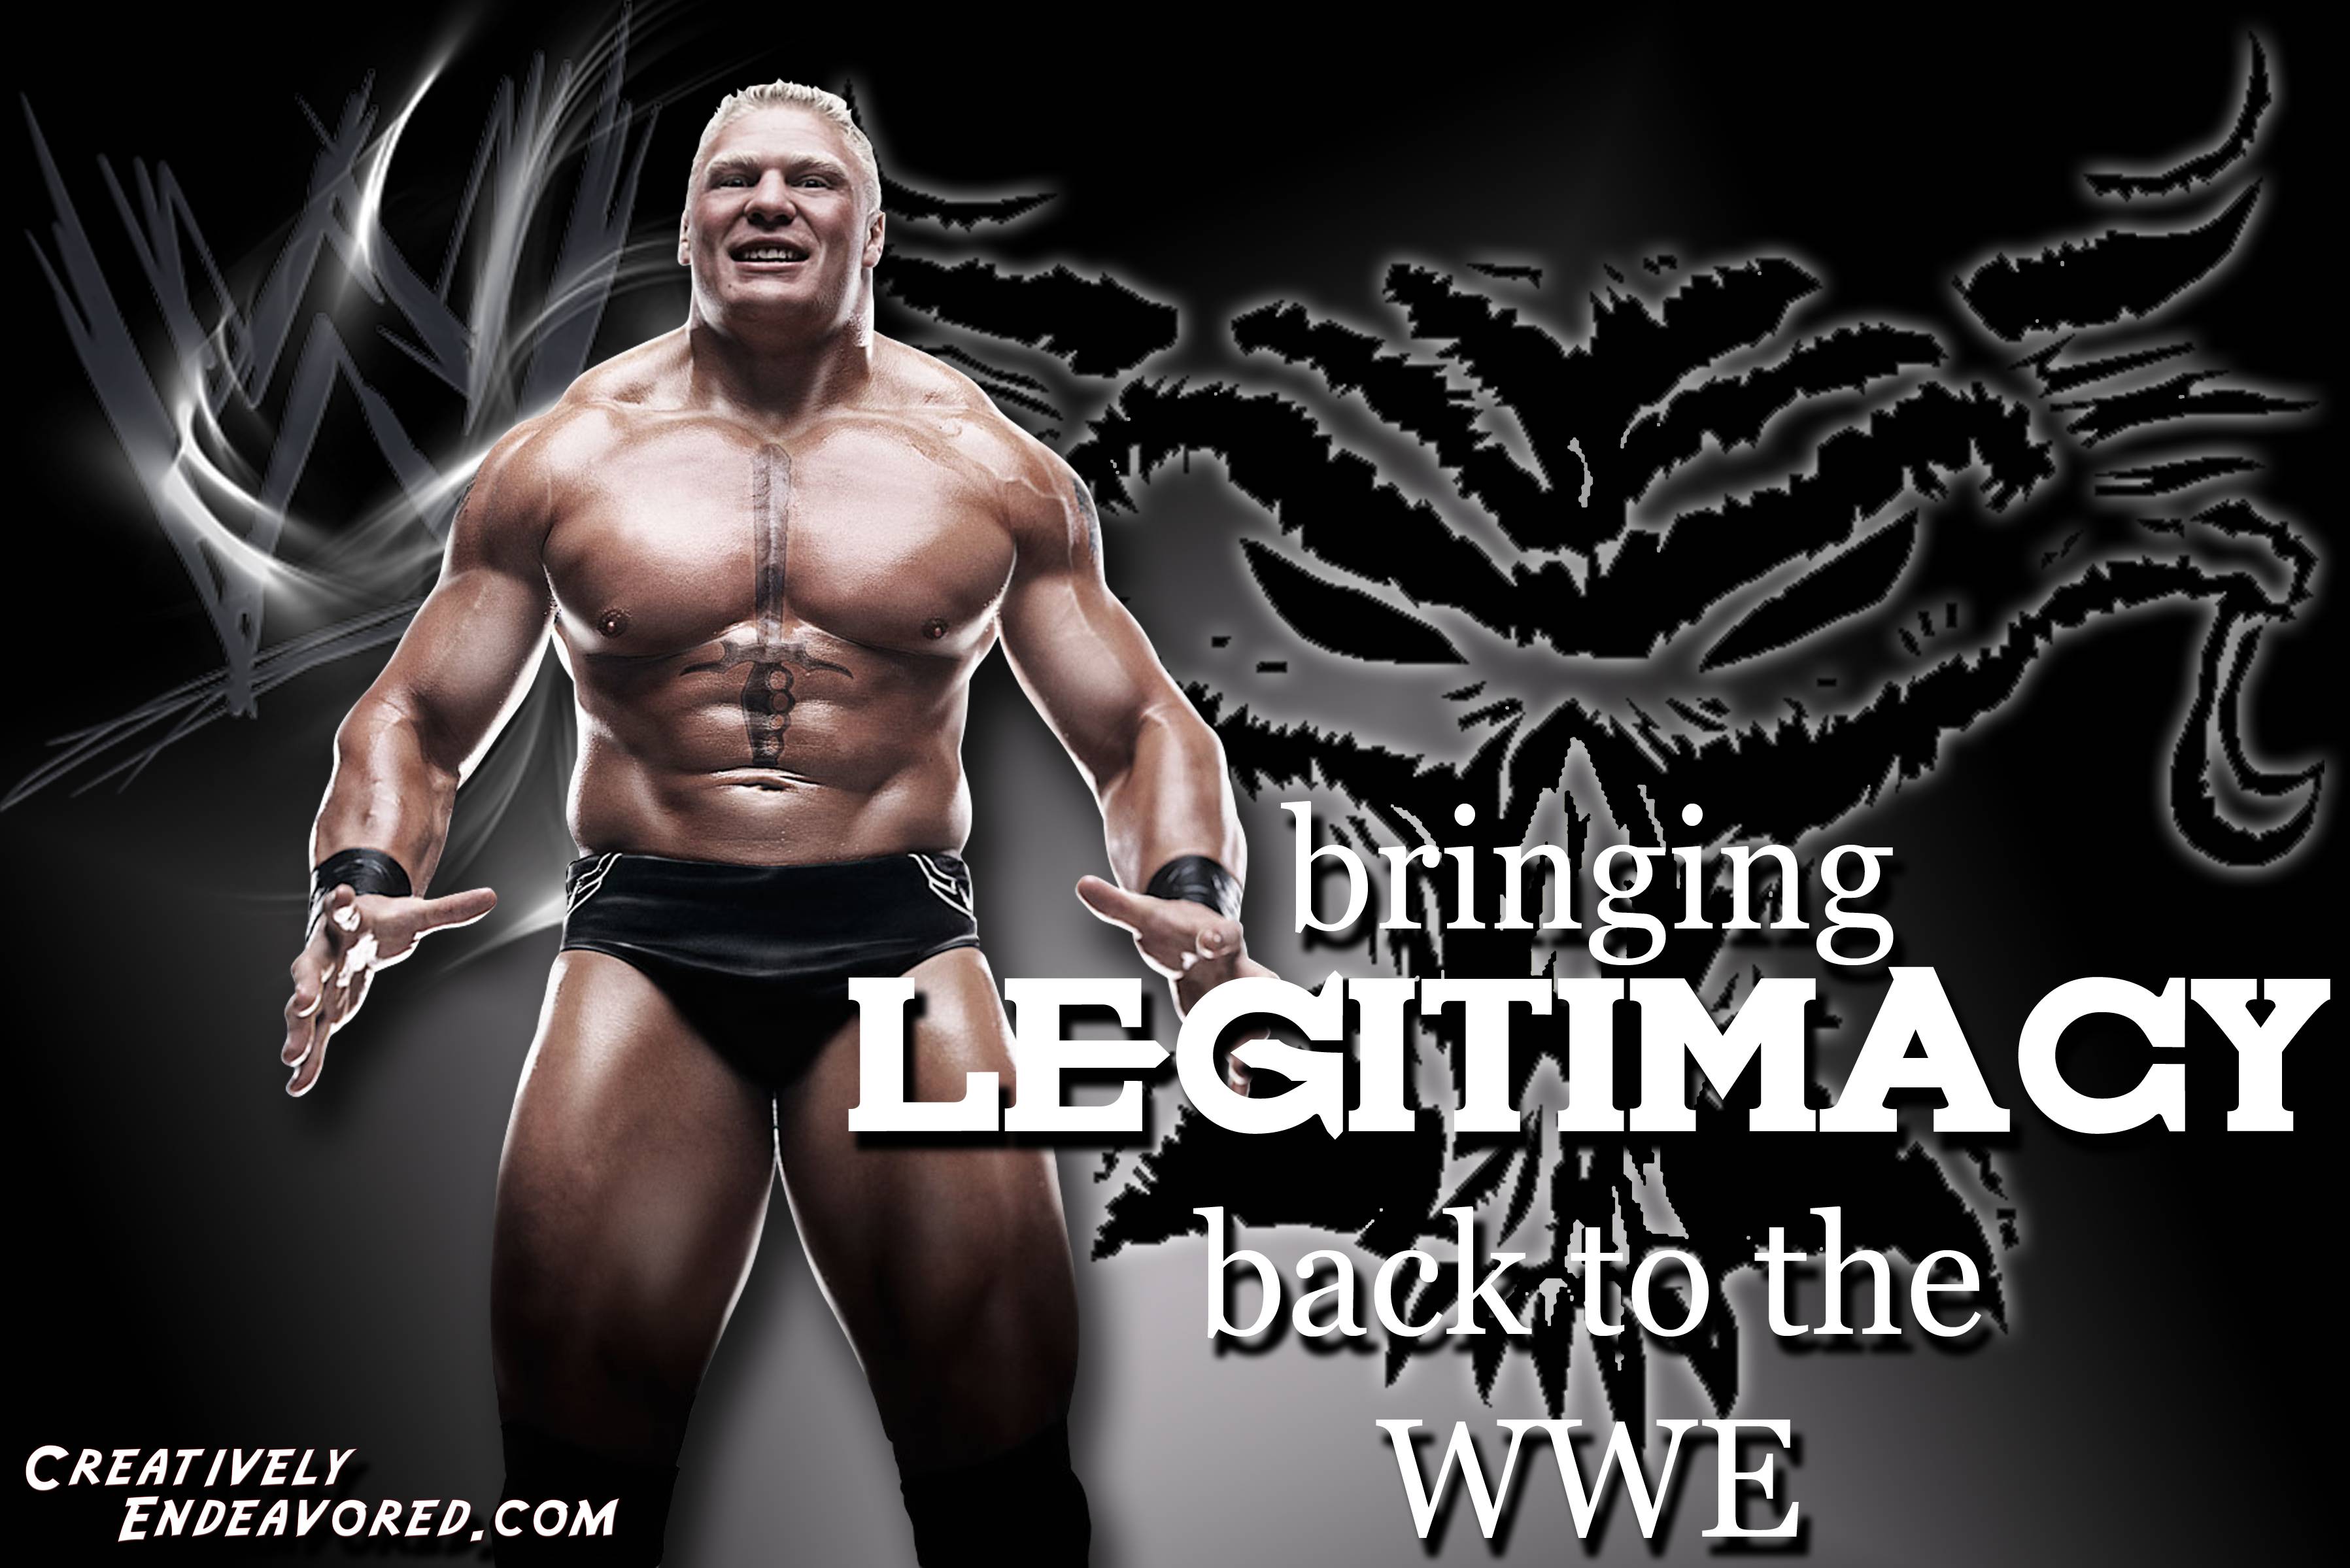 Brock Lesnar Wallpaper Free Brock Lesnar Background